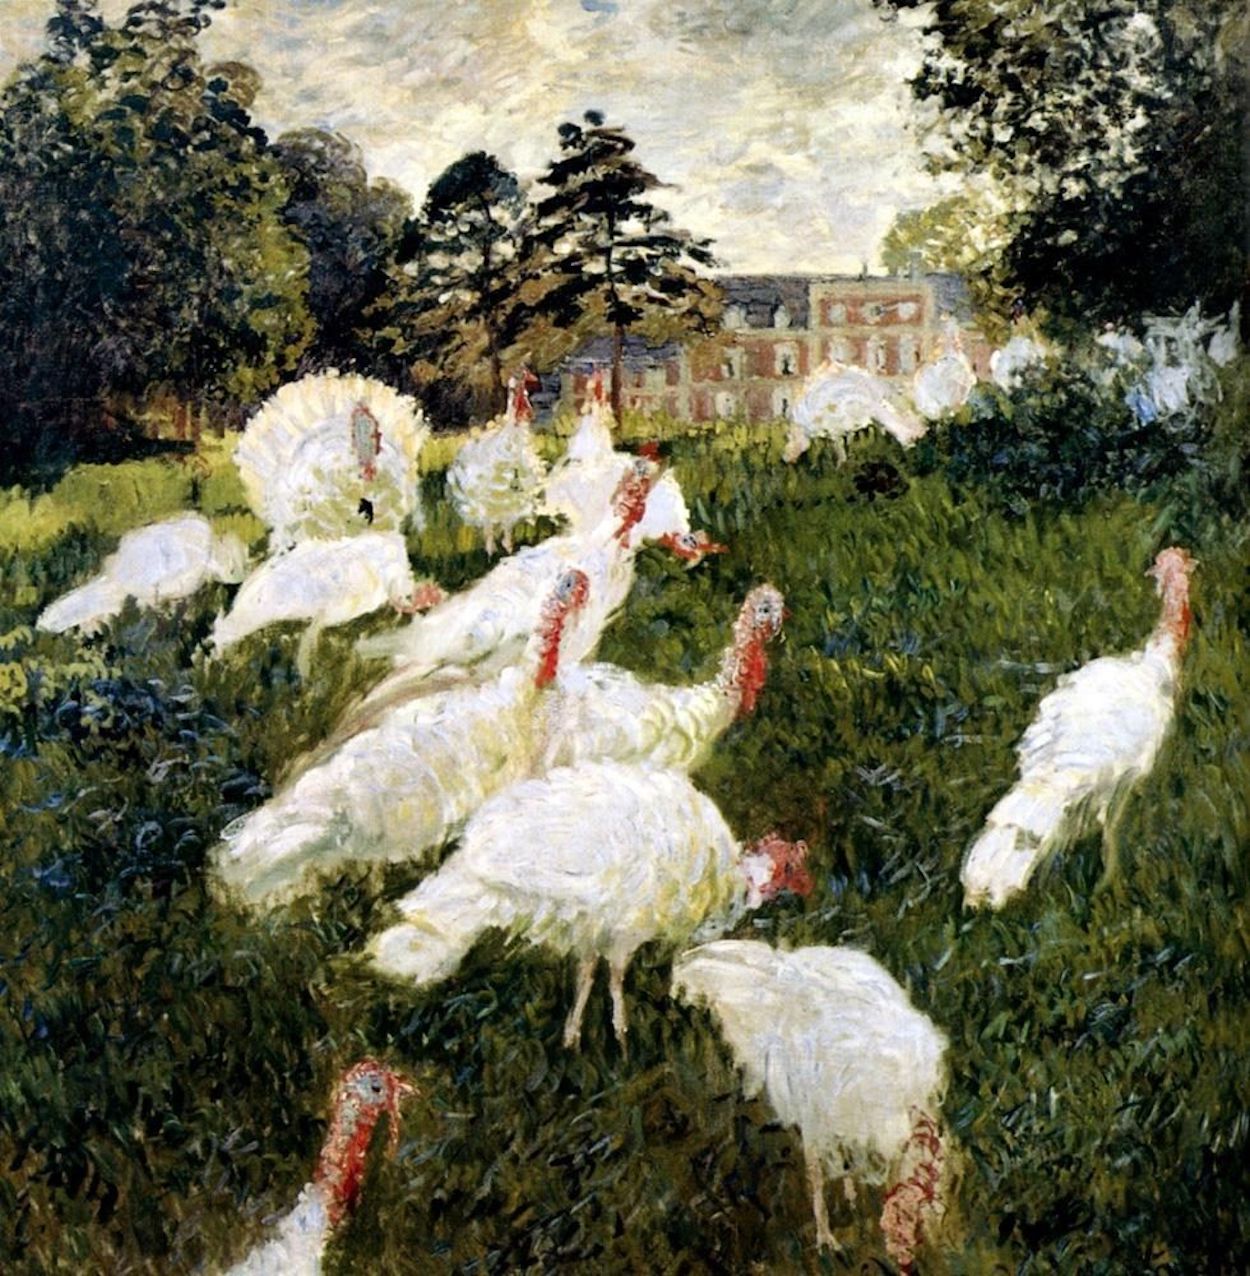 Krocani by Claude Monet - 1876 - 174 x 172 cm 